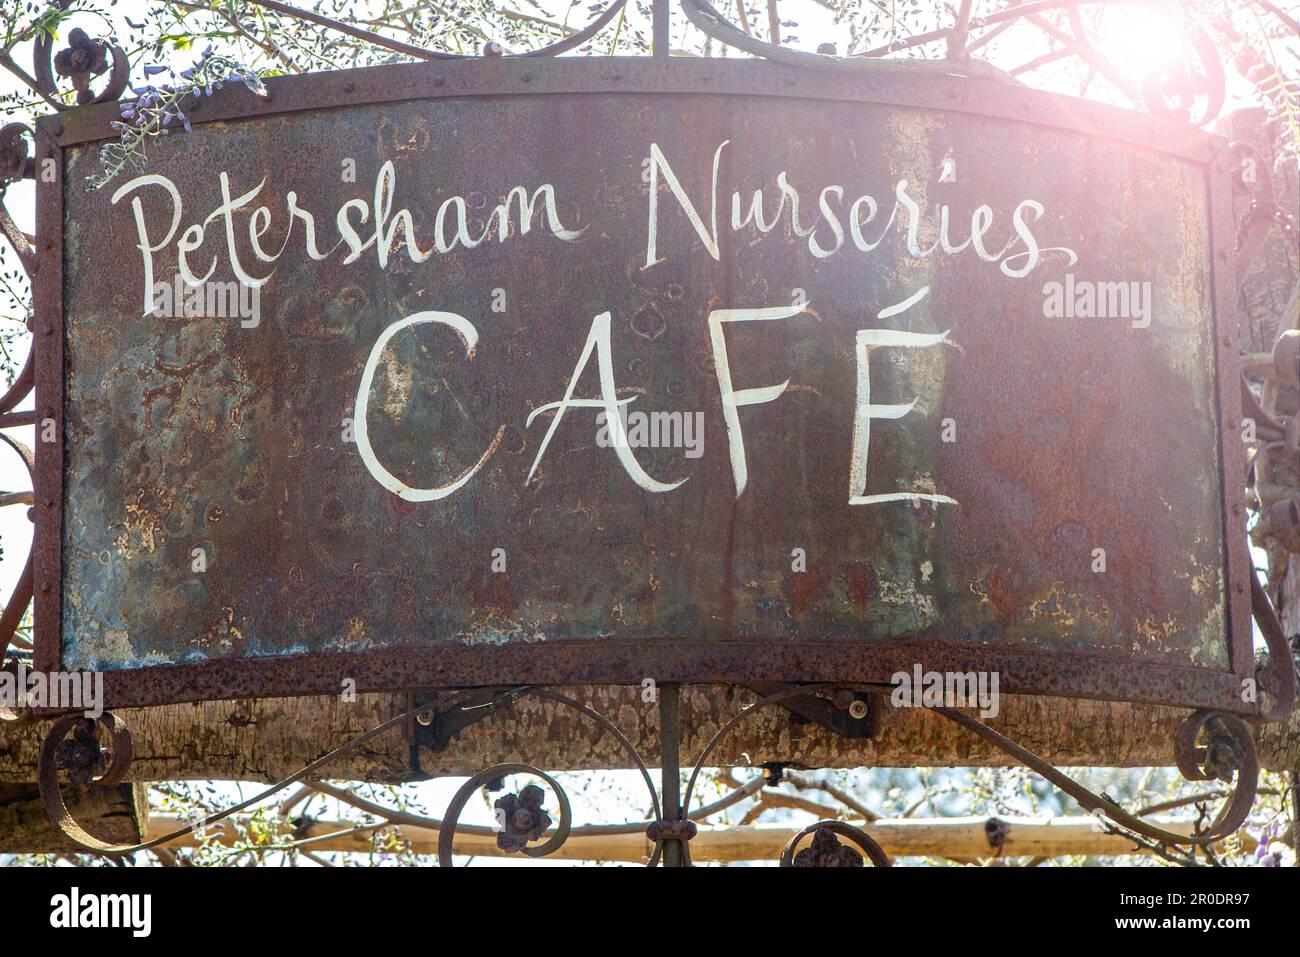 Petersham Nurseries cafe sign Stock Photo